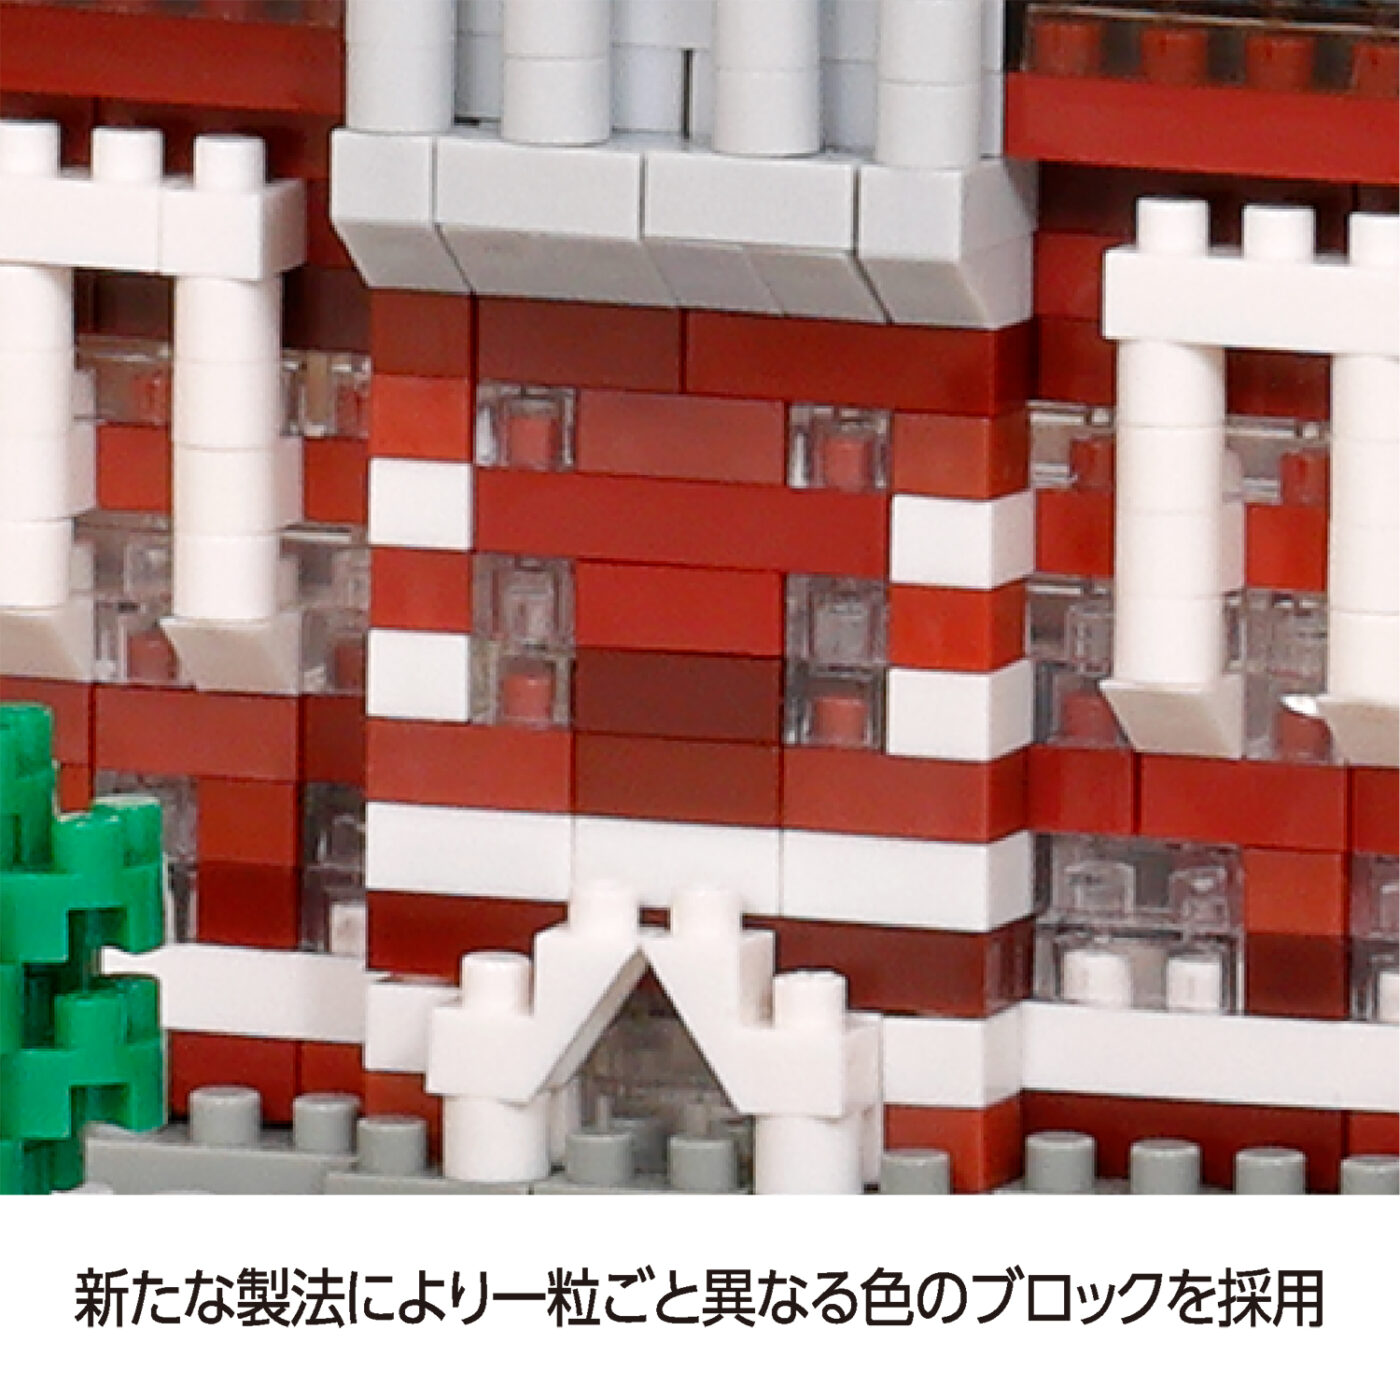 東京駅丸の内駅舎 デラックスエディションの商品画像6